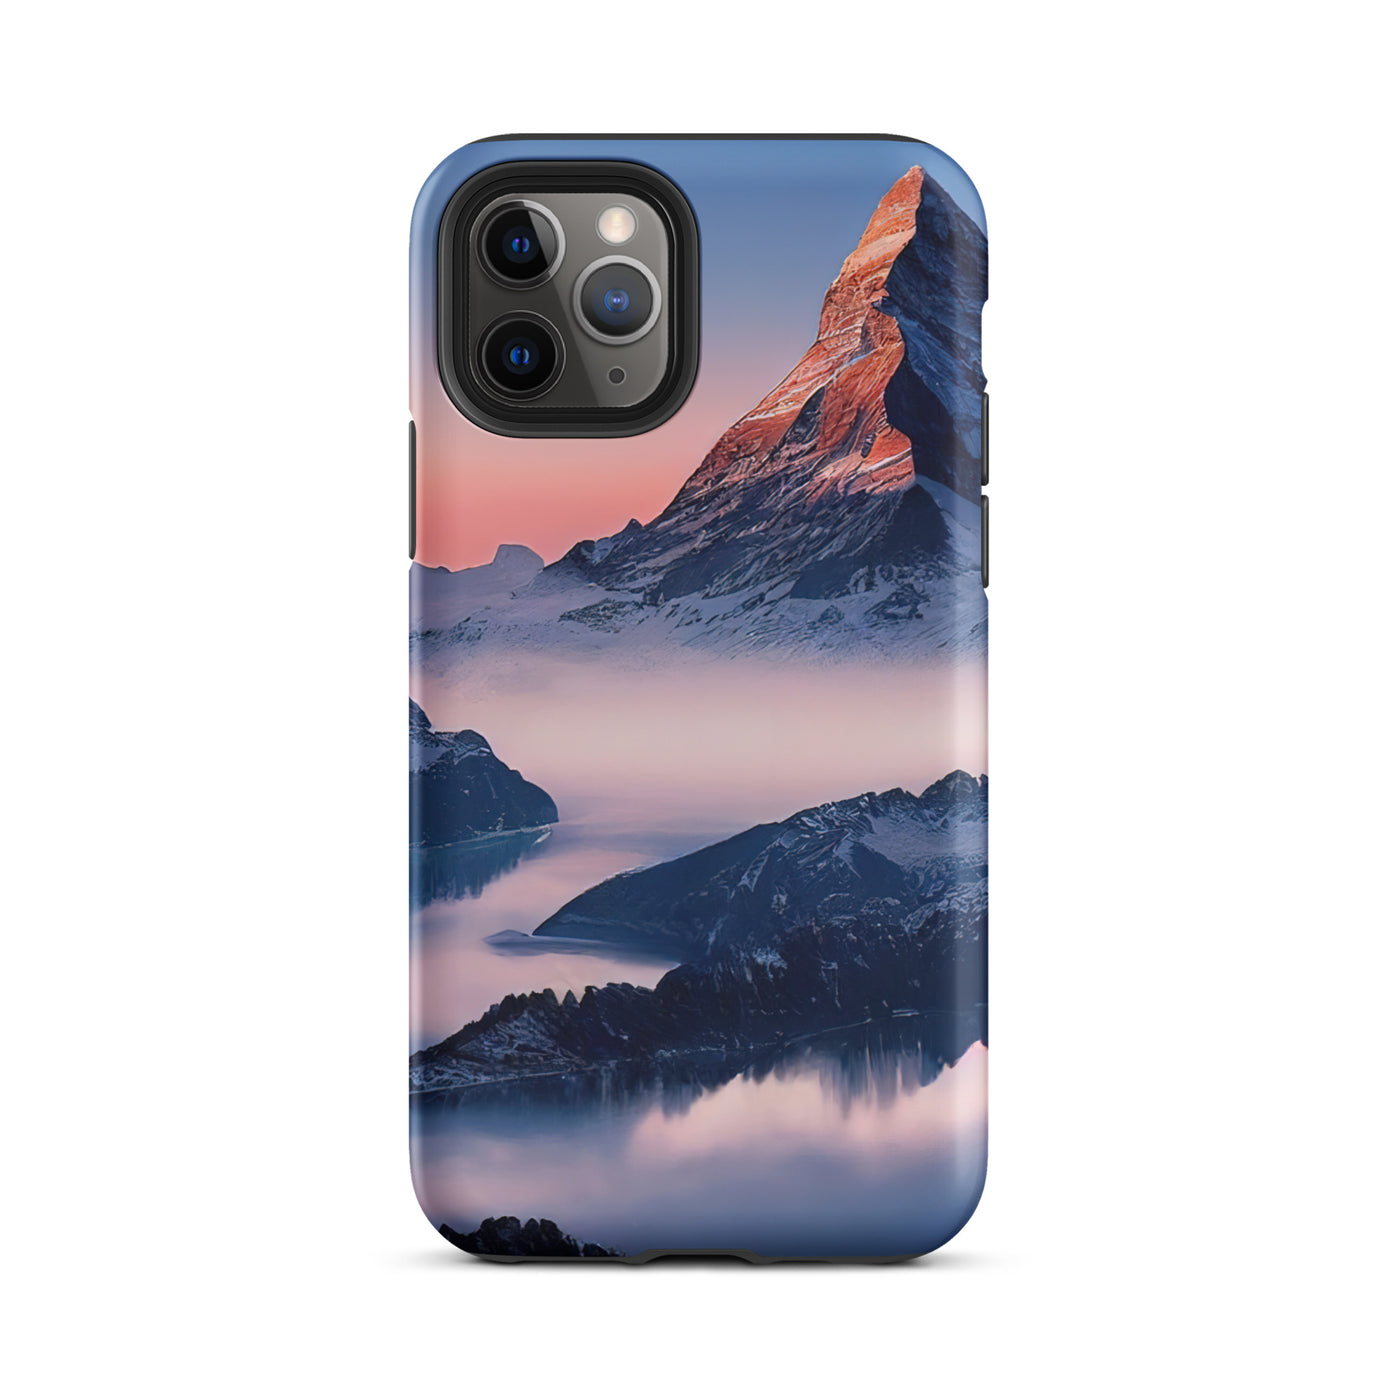 Matternhorn - Nebel - Berglandschaft - Malerei - iPhone Schutzhülle (robust) berge xxx iPhone 11 Pro